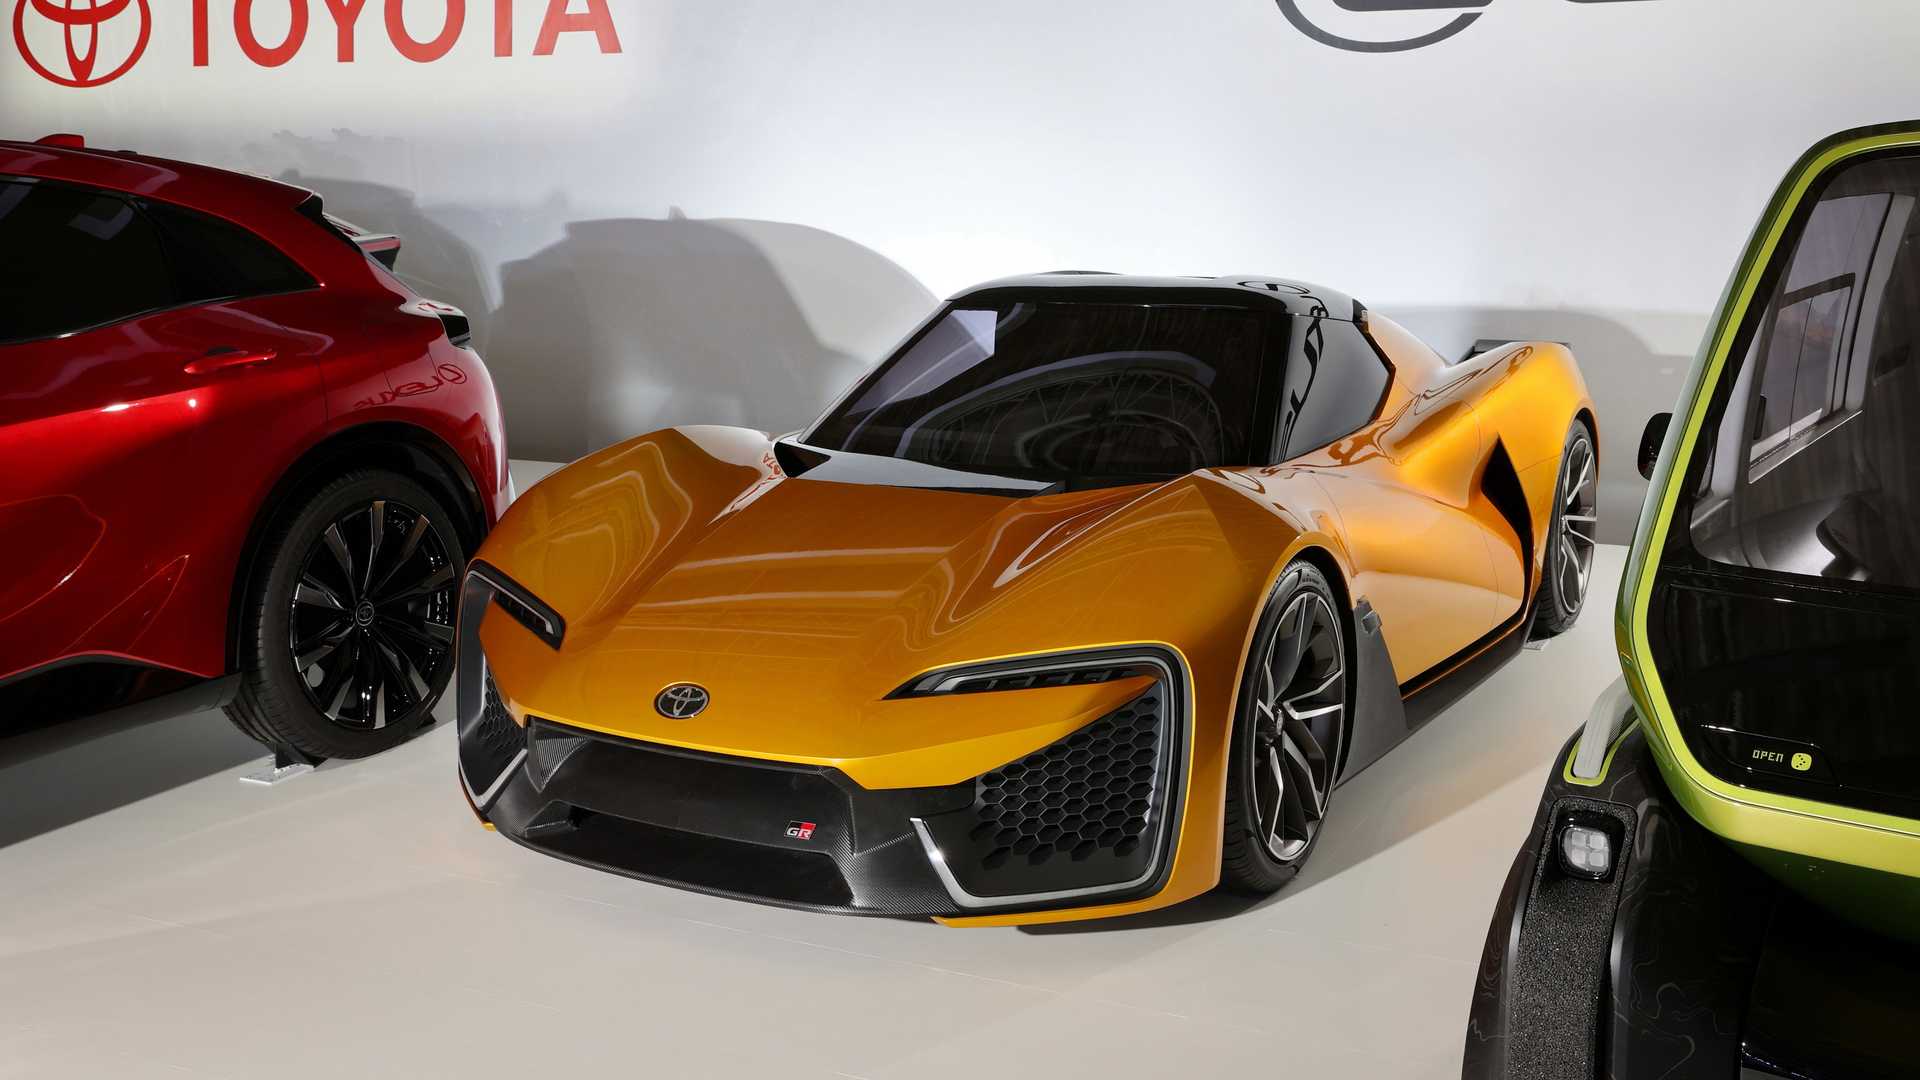 Protótipo do futuro desportivo Toyota/Suzuki